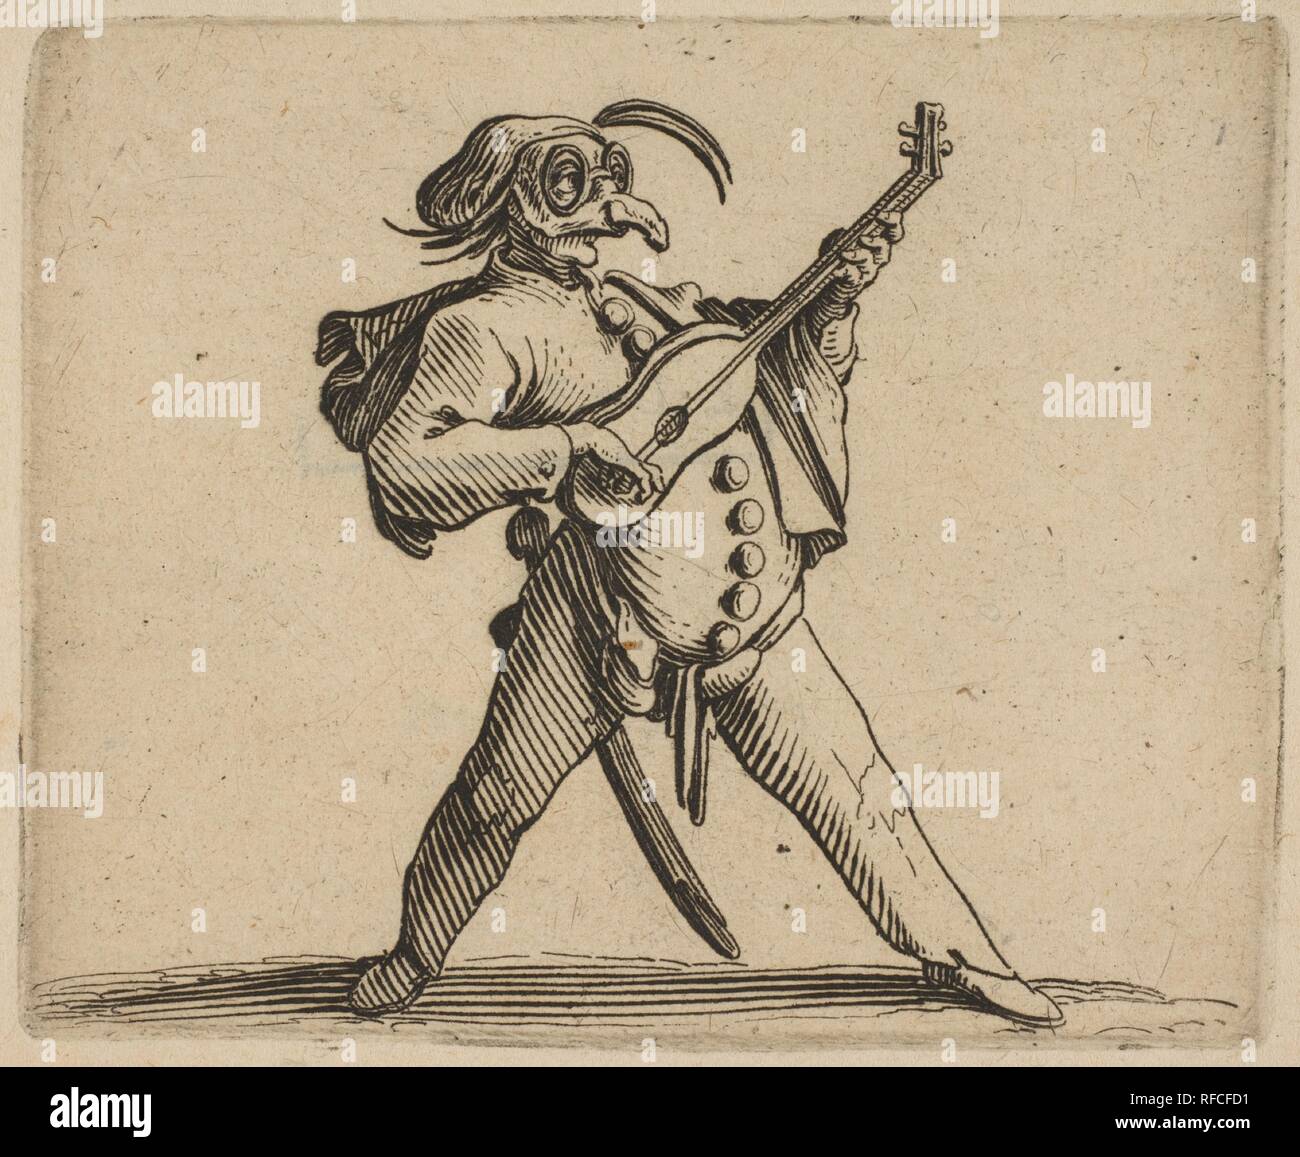 Le Comédien Jouant Masqué de la Guitare (el comediante enmascarados tocando la guitarra), desde varie figure Gobbi, suite appelée aussi Les Bossus, Les Pygmées, Les Nains grotescos (diferentes cifras, la Hunchbacks Hunchbacked, el Pygmes, la grotesca enanos). Artista: Jacques Callot (1592-1635 Francés, Nancy Nancy). Dimensiones: Hoja: 7 5/16 x 10 3/8 pulg. (18,5 x 26,3 cm): 2 placa 9/16 x 3 1/8 pulg. (6,5 x 8 cm). Series/Cartera: Les Gobbi, suite appelée aussi Les Bossus, Les Pygmées, Les Nains grotescos. Fecha: 1616-22. Museo: Museo Metropolitano de Arte, Nueva York, Estados Unidos. Foto de stock